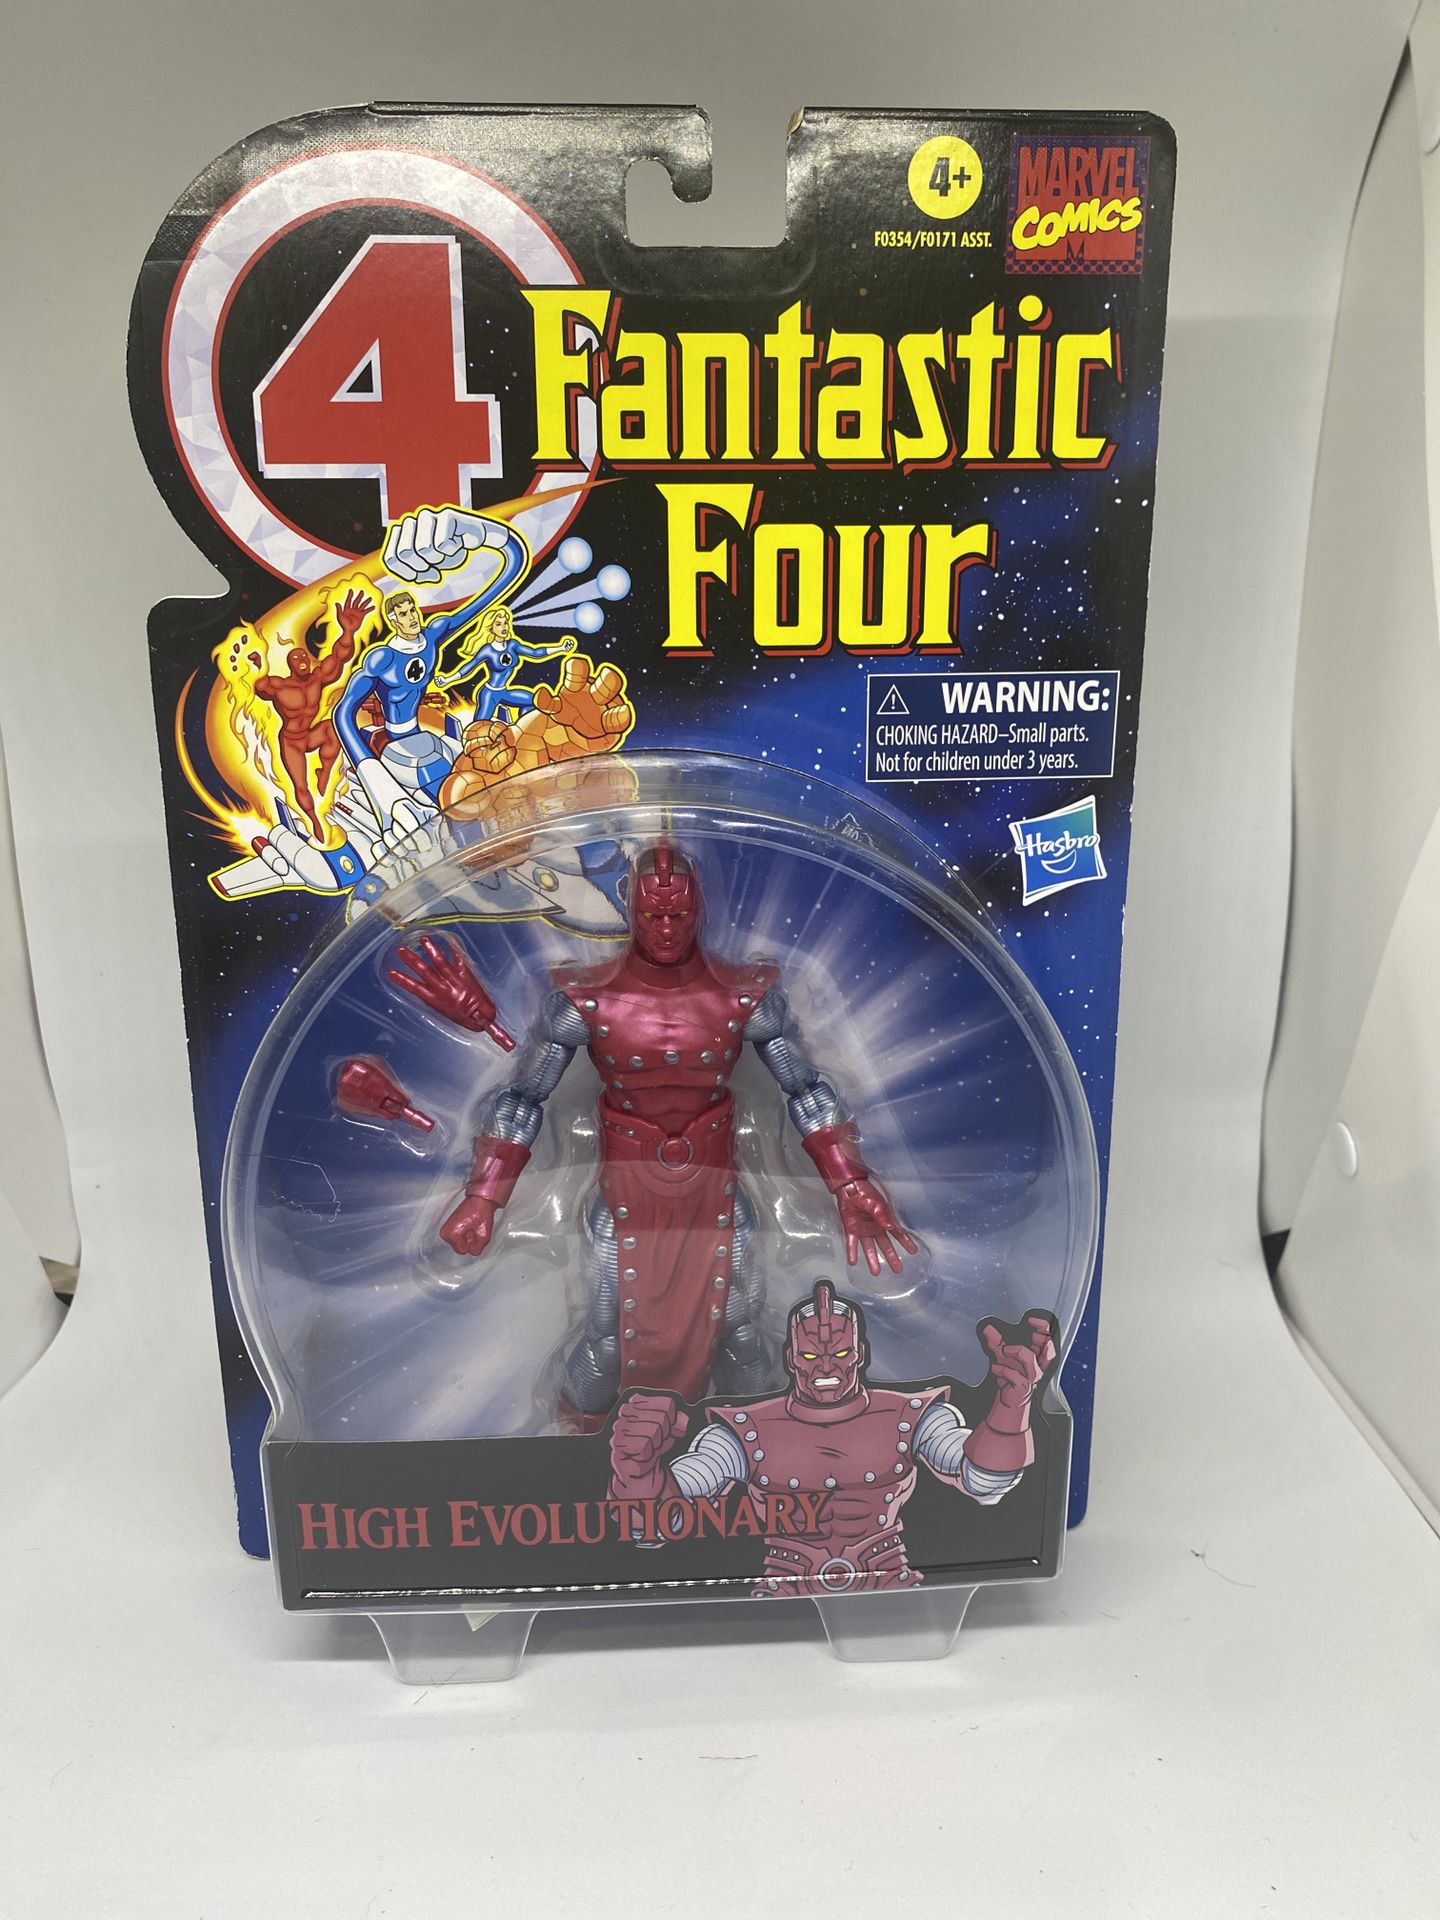 Fantastic four action figure